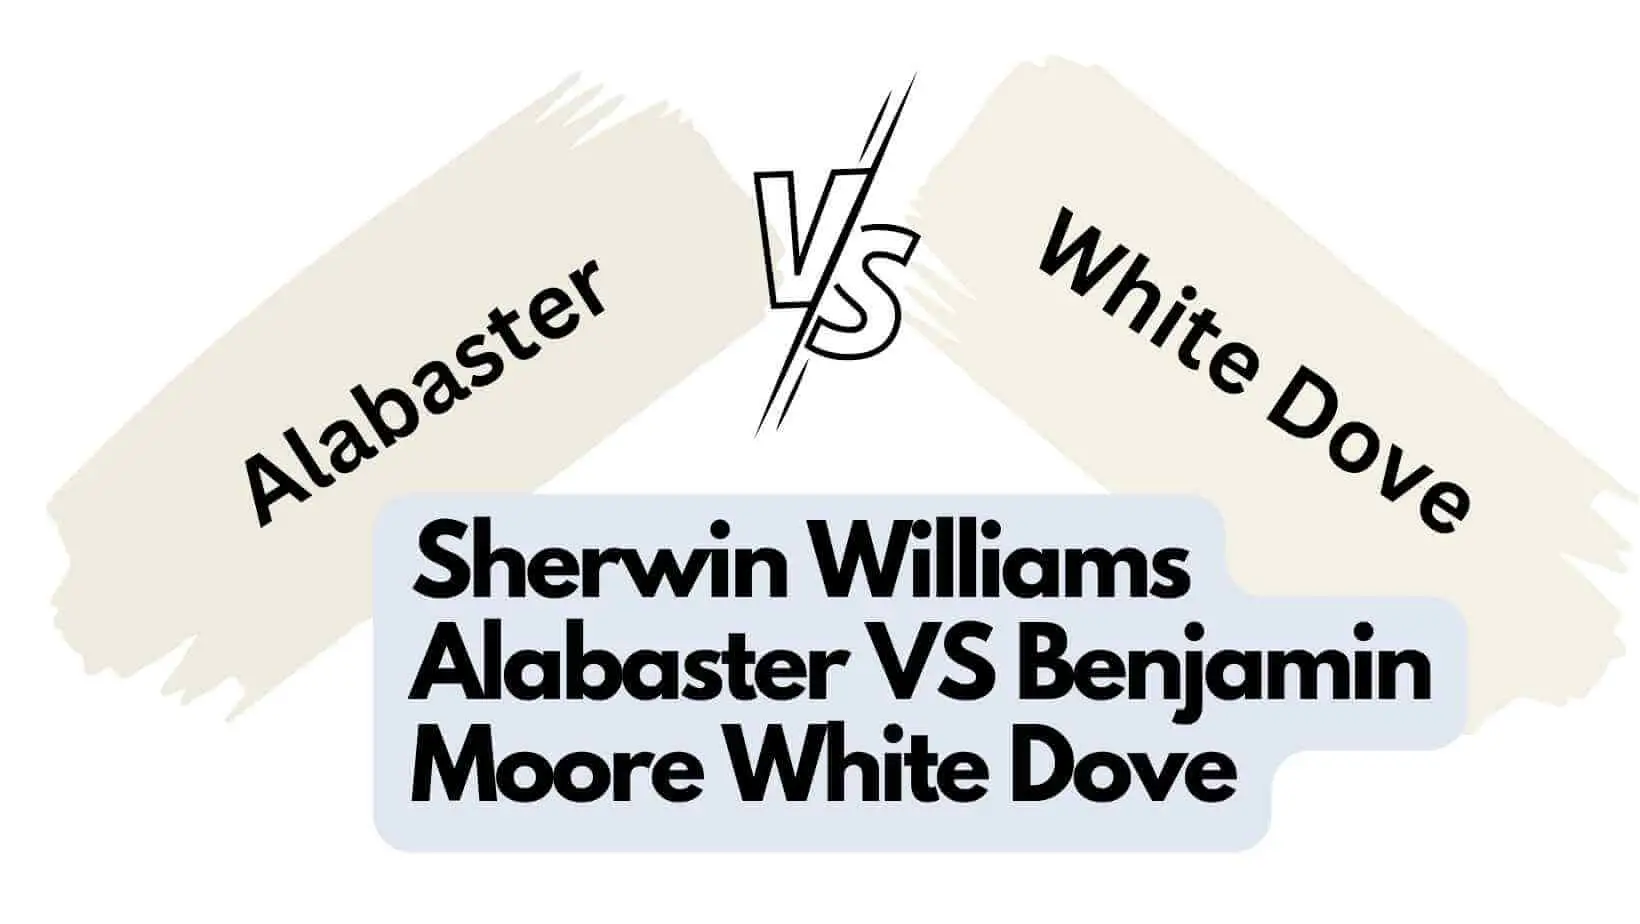 Sherwin Williams Alabaster vs Benjamin Moore White Dove